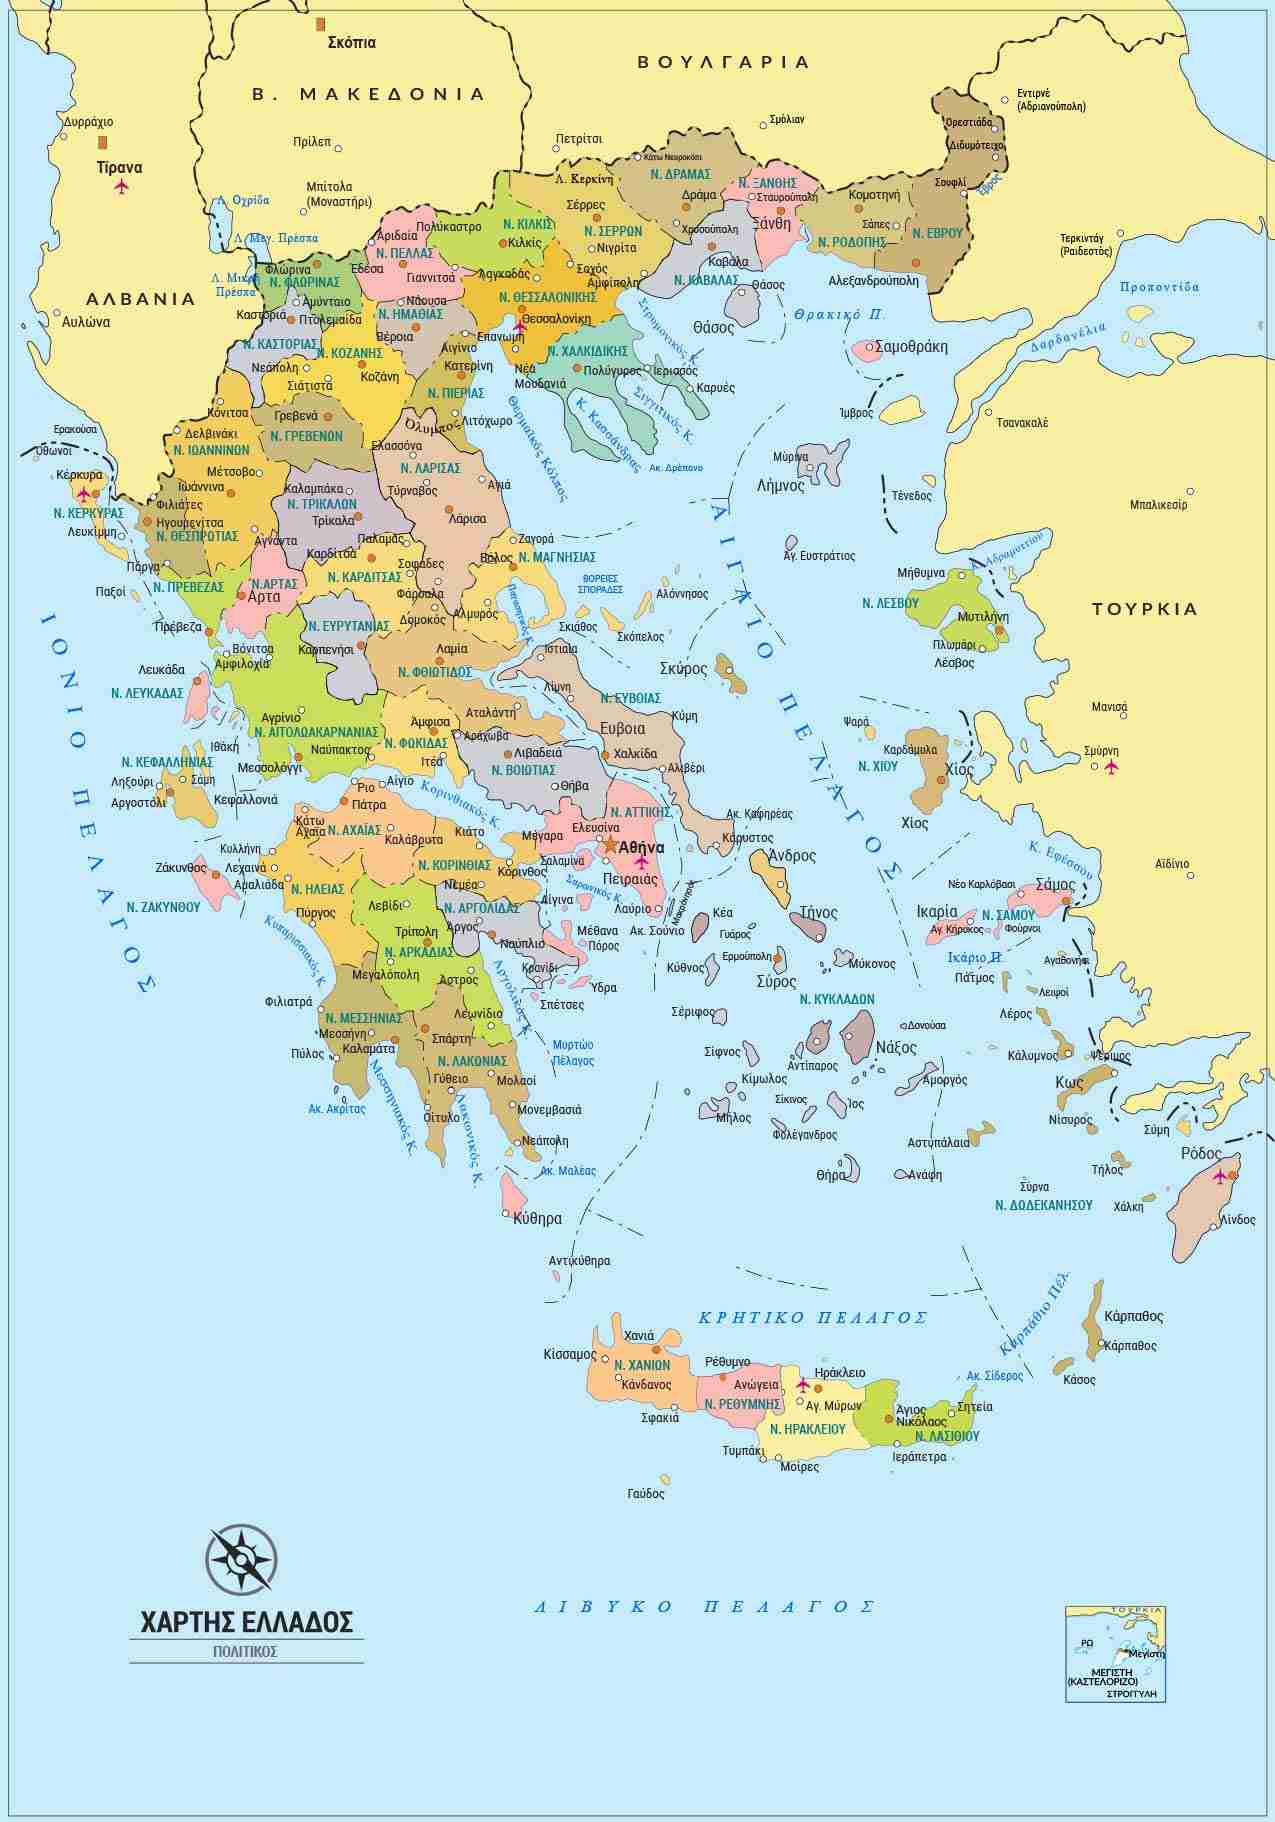 Χάρτης Ελλάδας με νομούς - Χάρτες τοίχου: